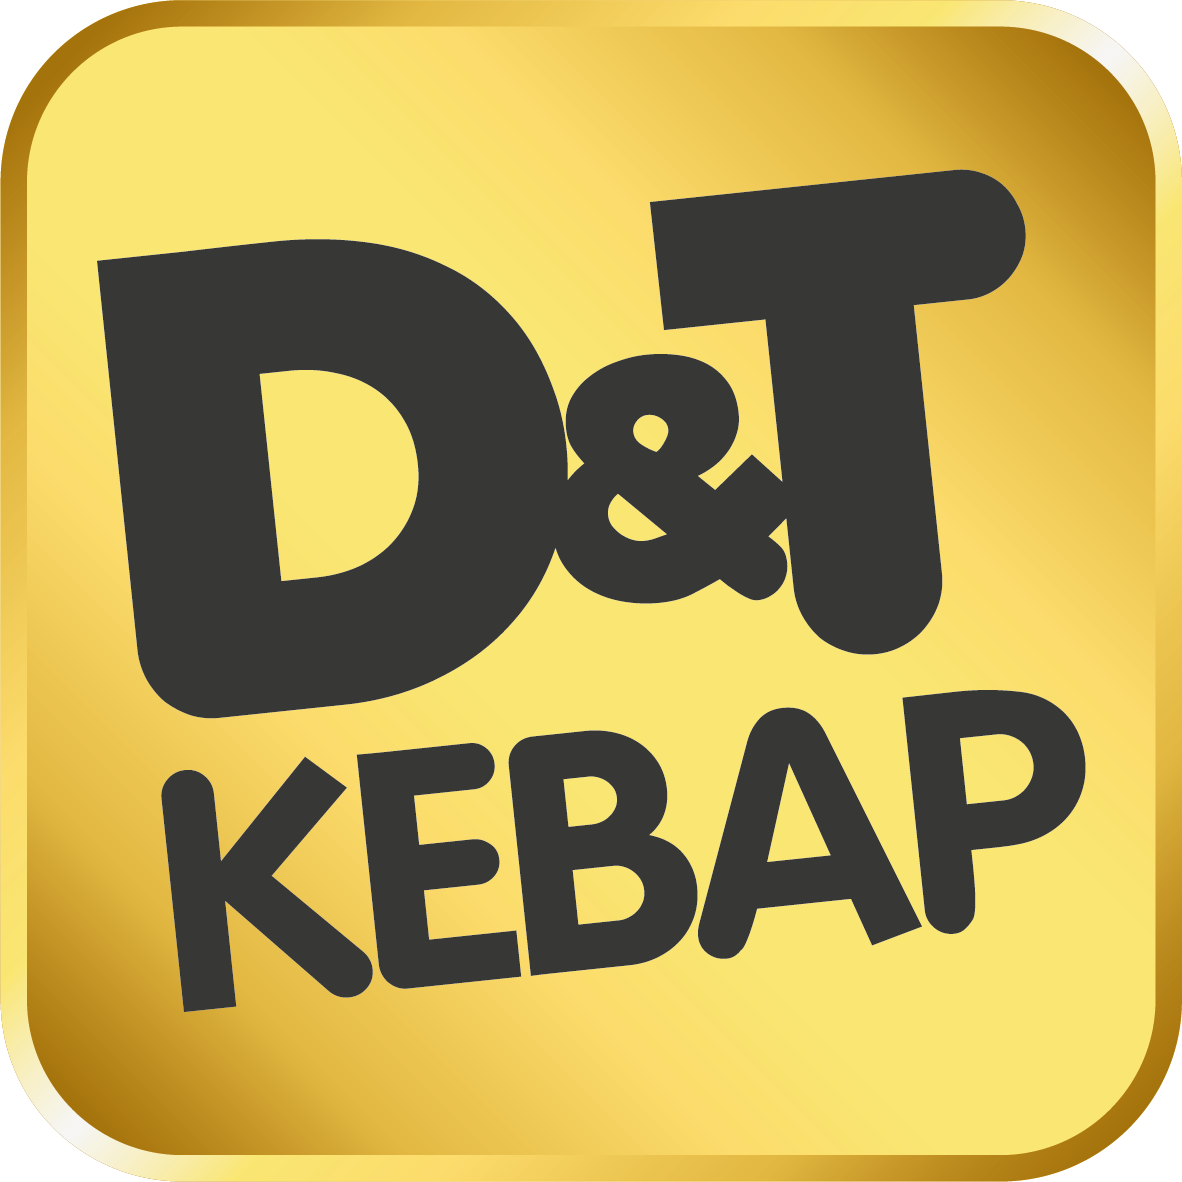 D&T kebap Logo